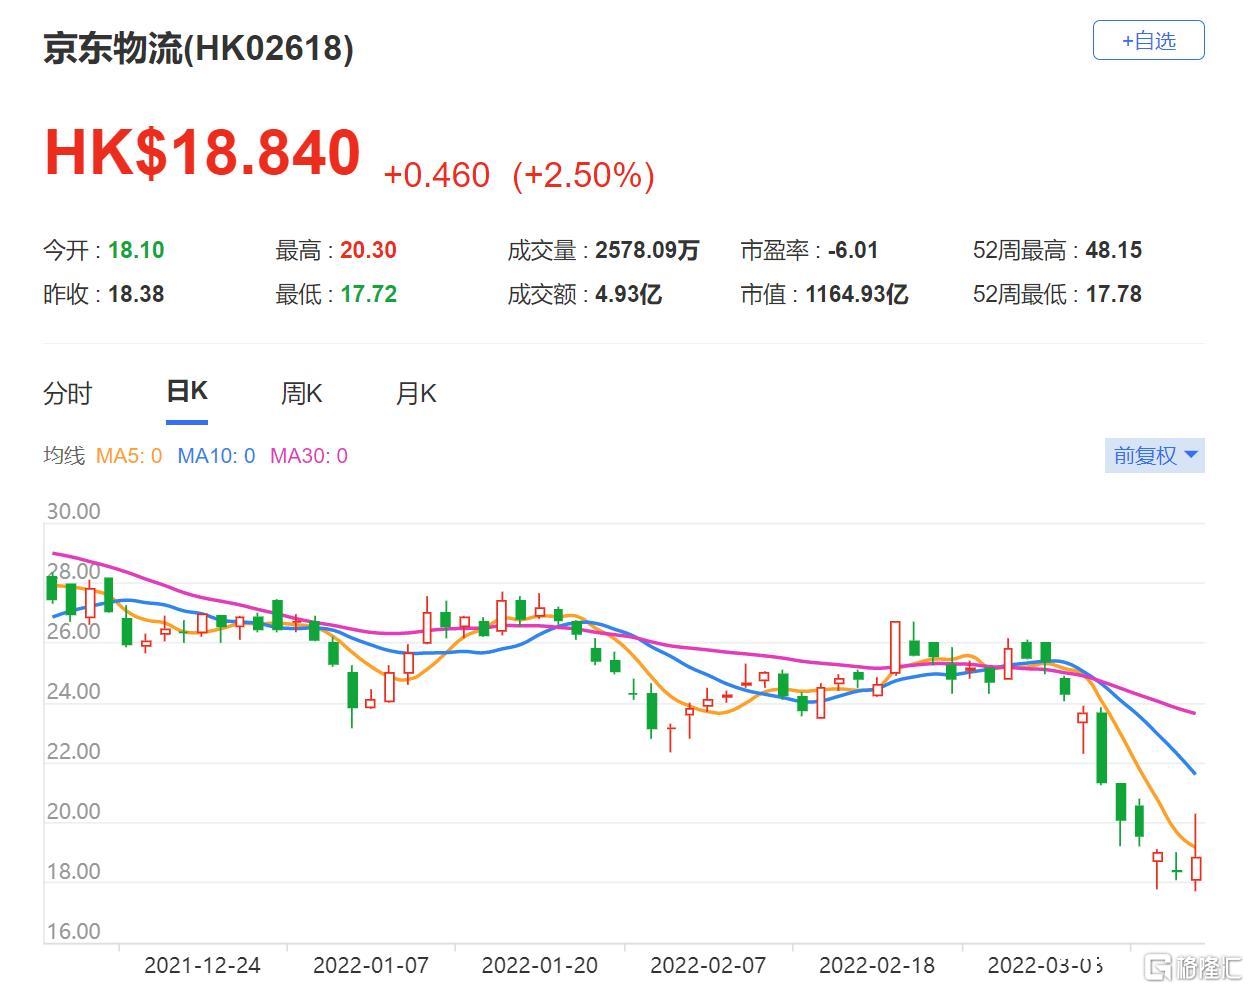 京东物流(2618.HK)收购内地物流商德邦股份约99.99%股本权益 约89.76亿元人民币